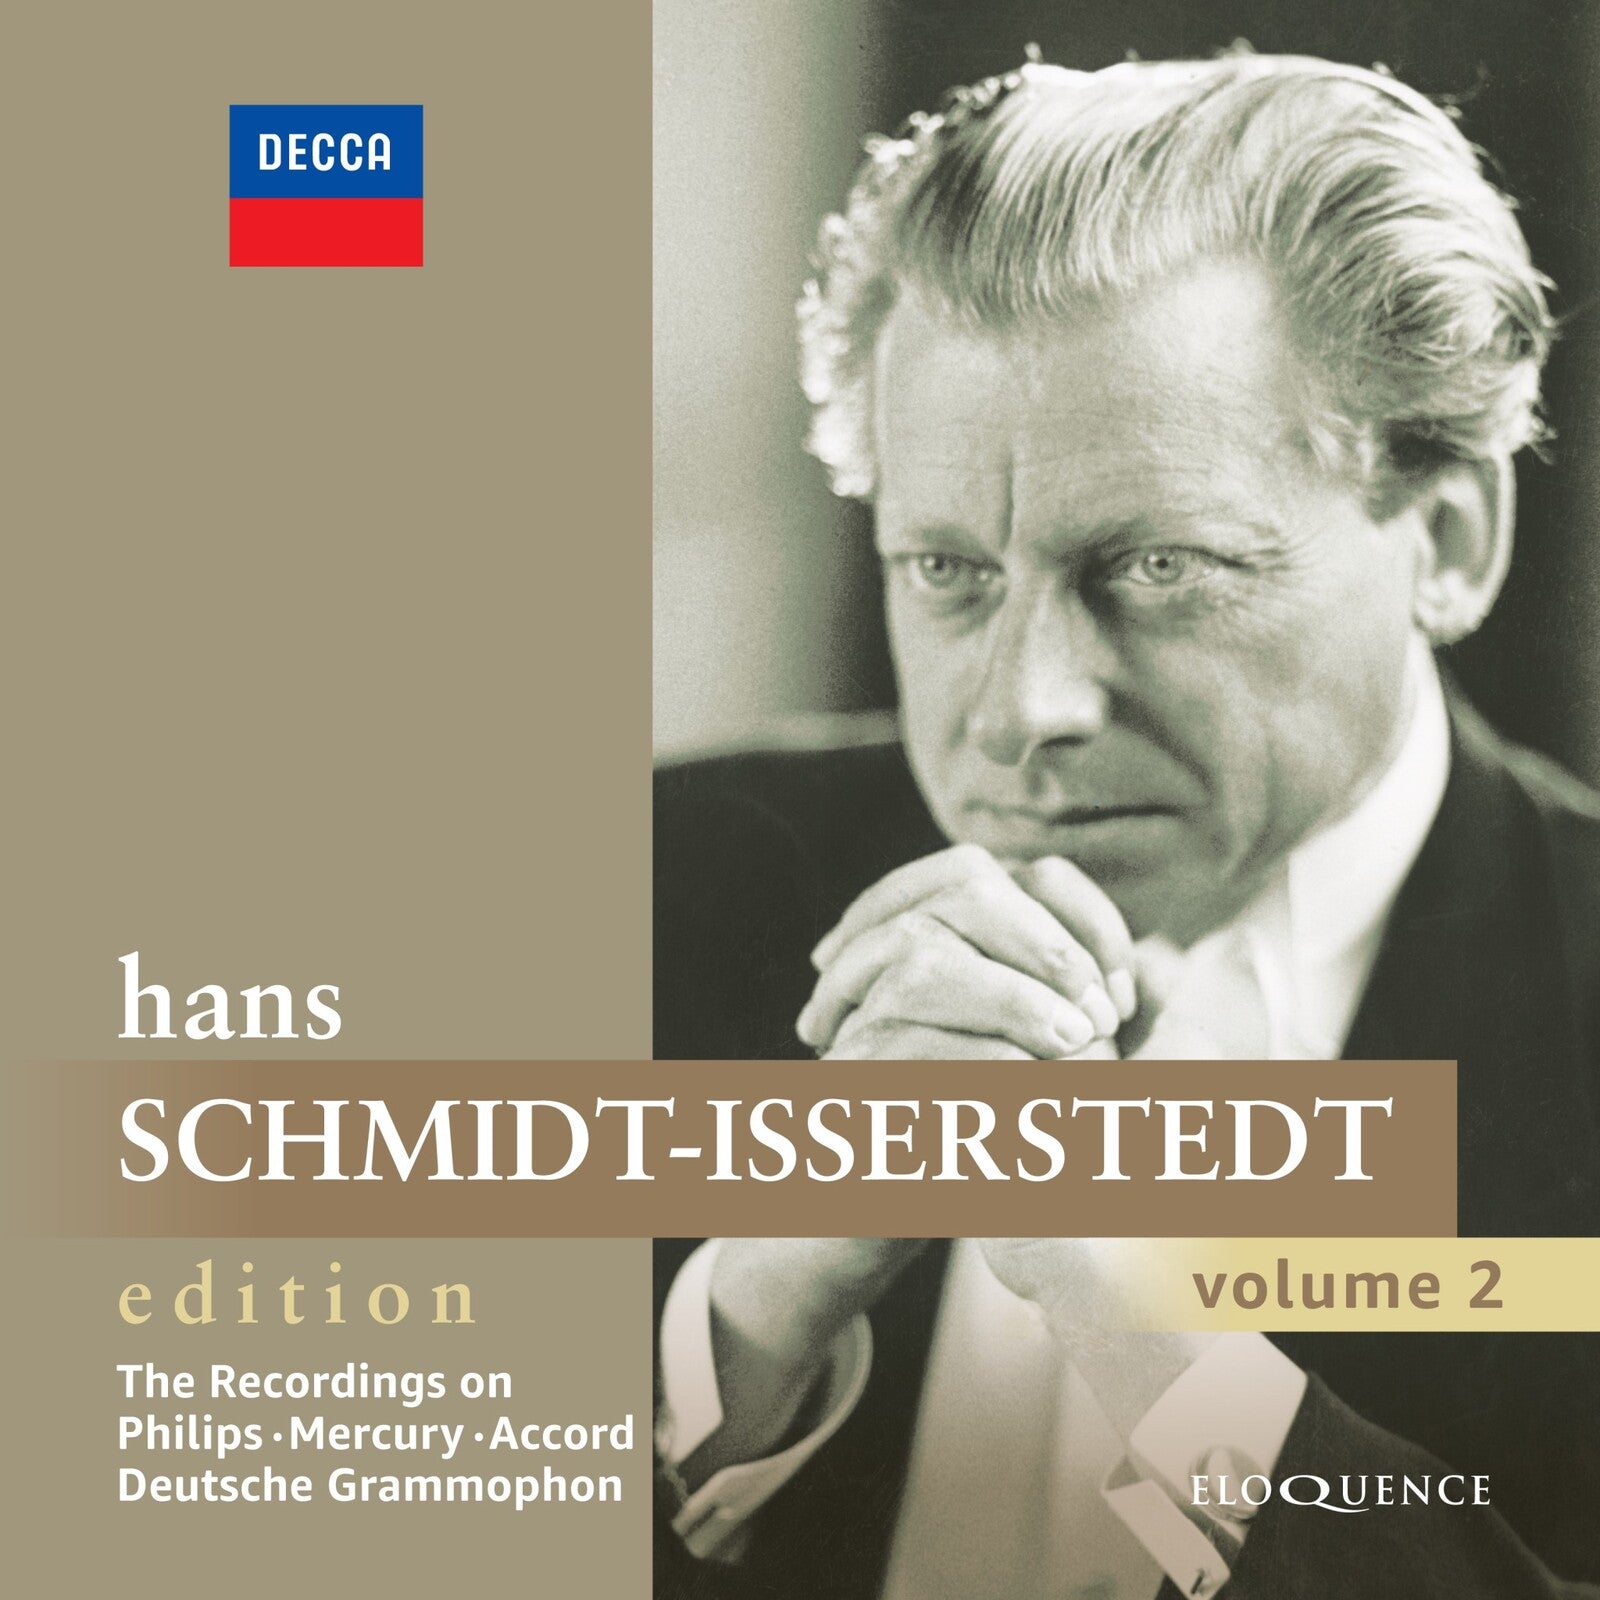 Hans　Music　Hans　Volume　Schmidt-Isserstedt　Schmidt-Isserstedt;　LSO;　Proper　Alfred　Brendel:　Edition　–